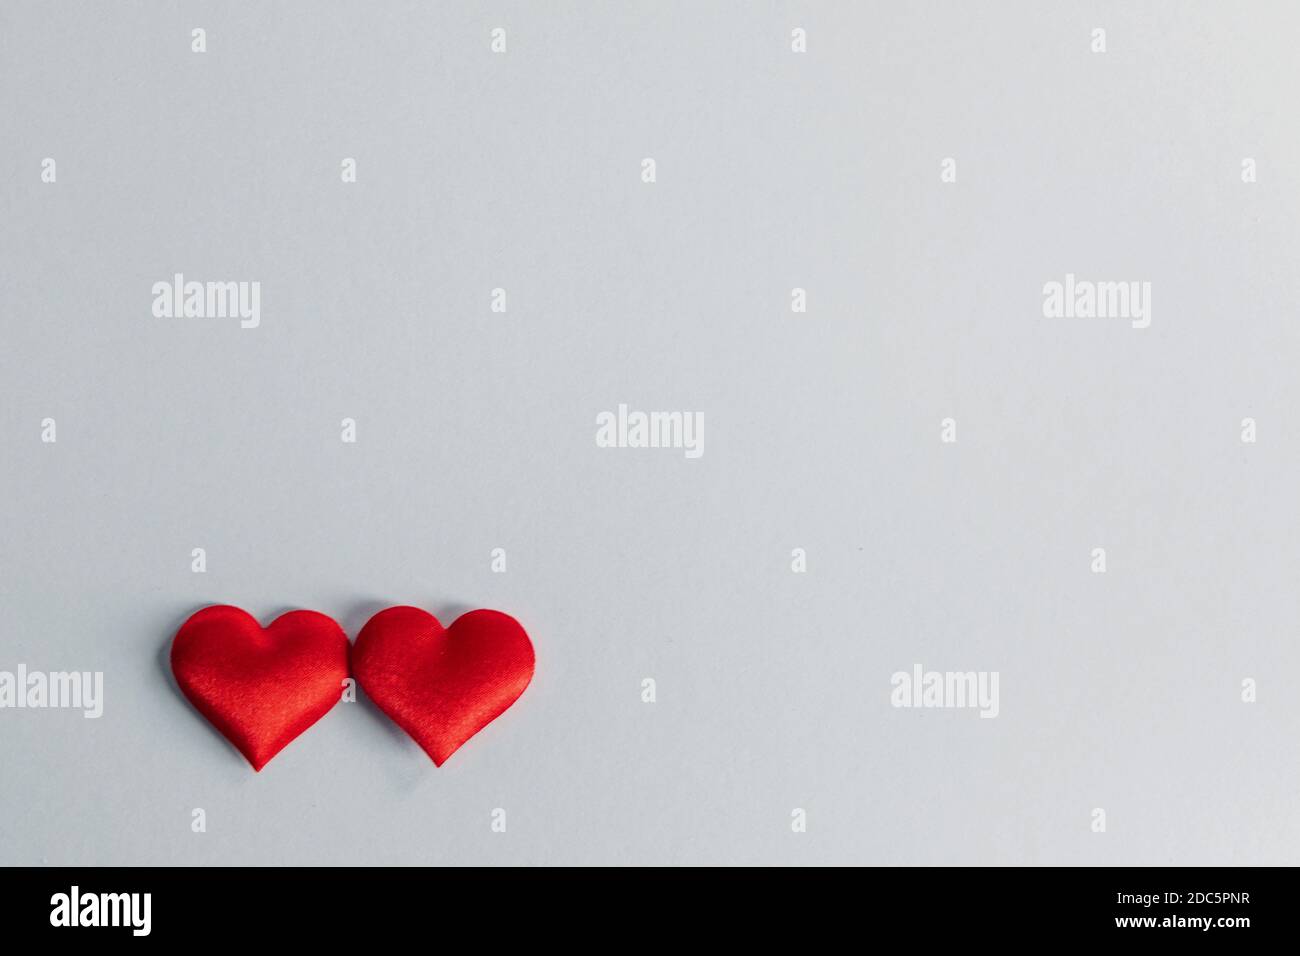 San Valentino due cuori di seta rossa su sfondo grigio carta, concetto di amore Foto Stock